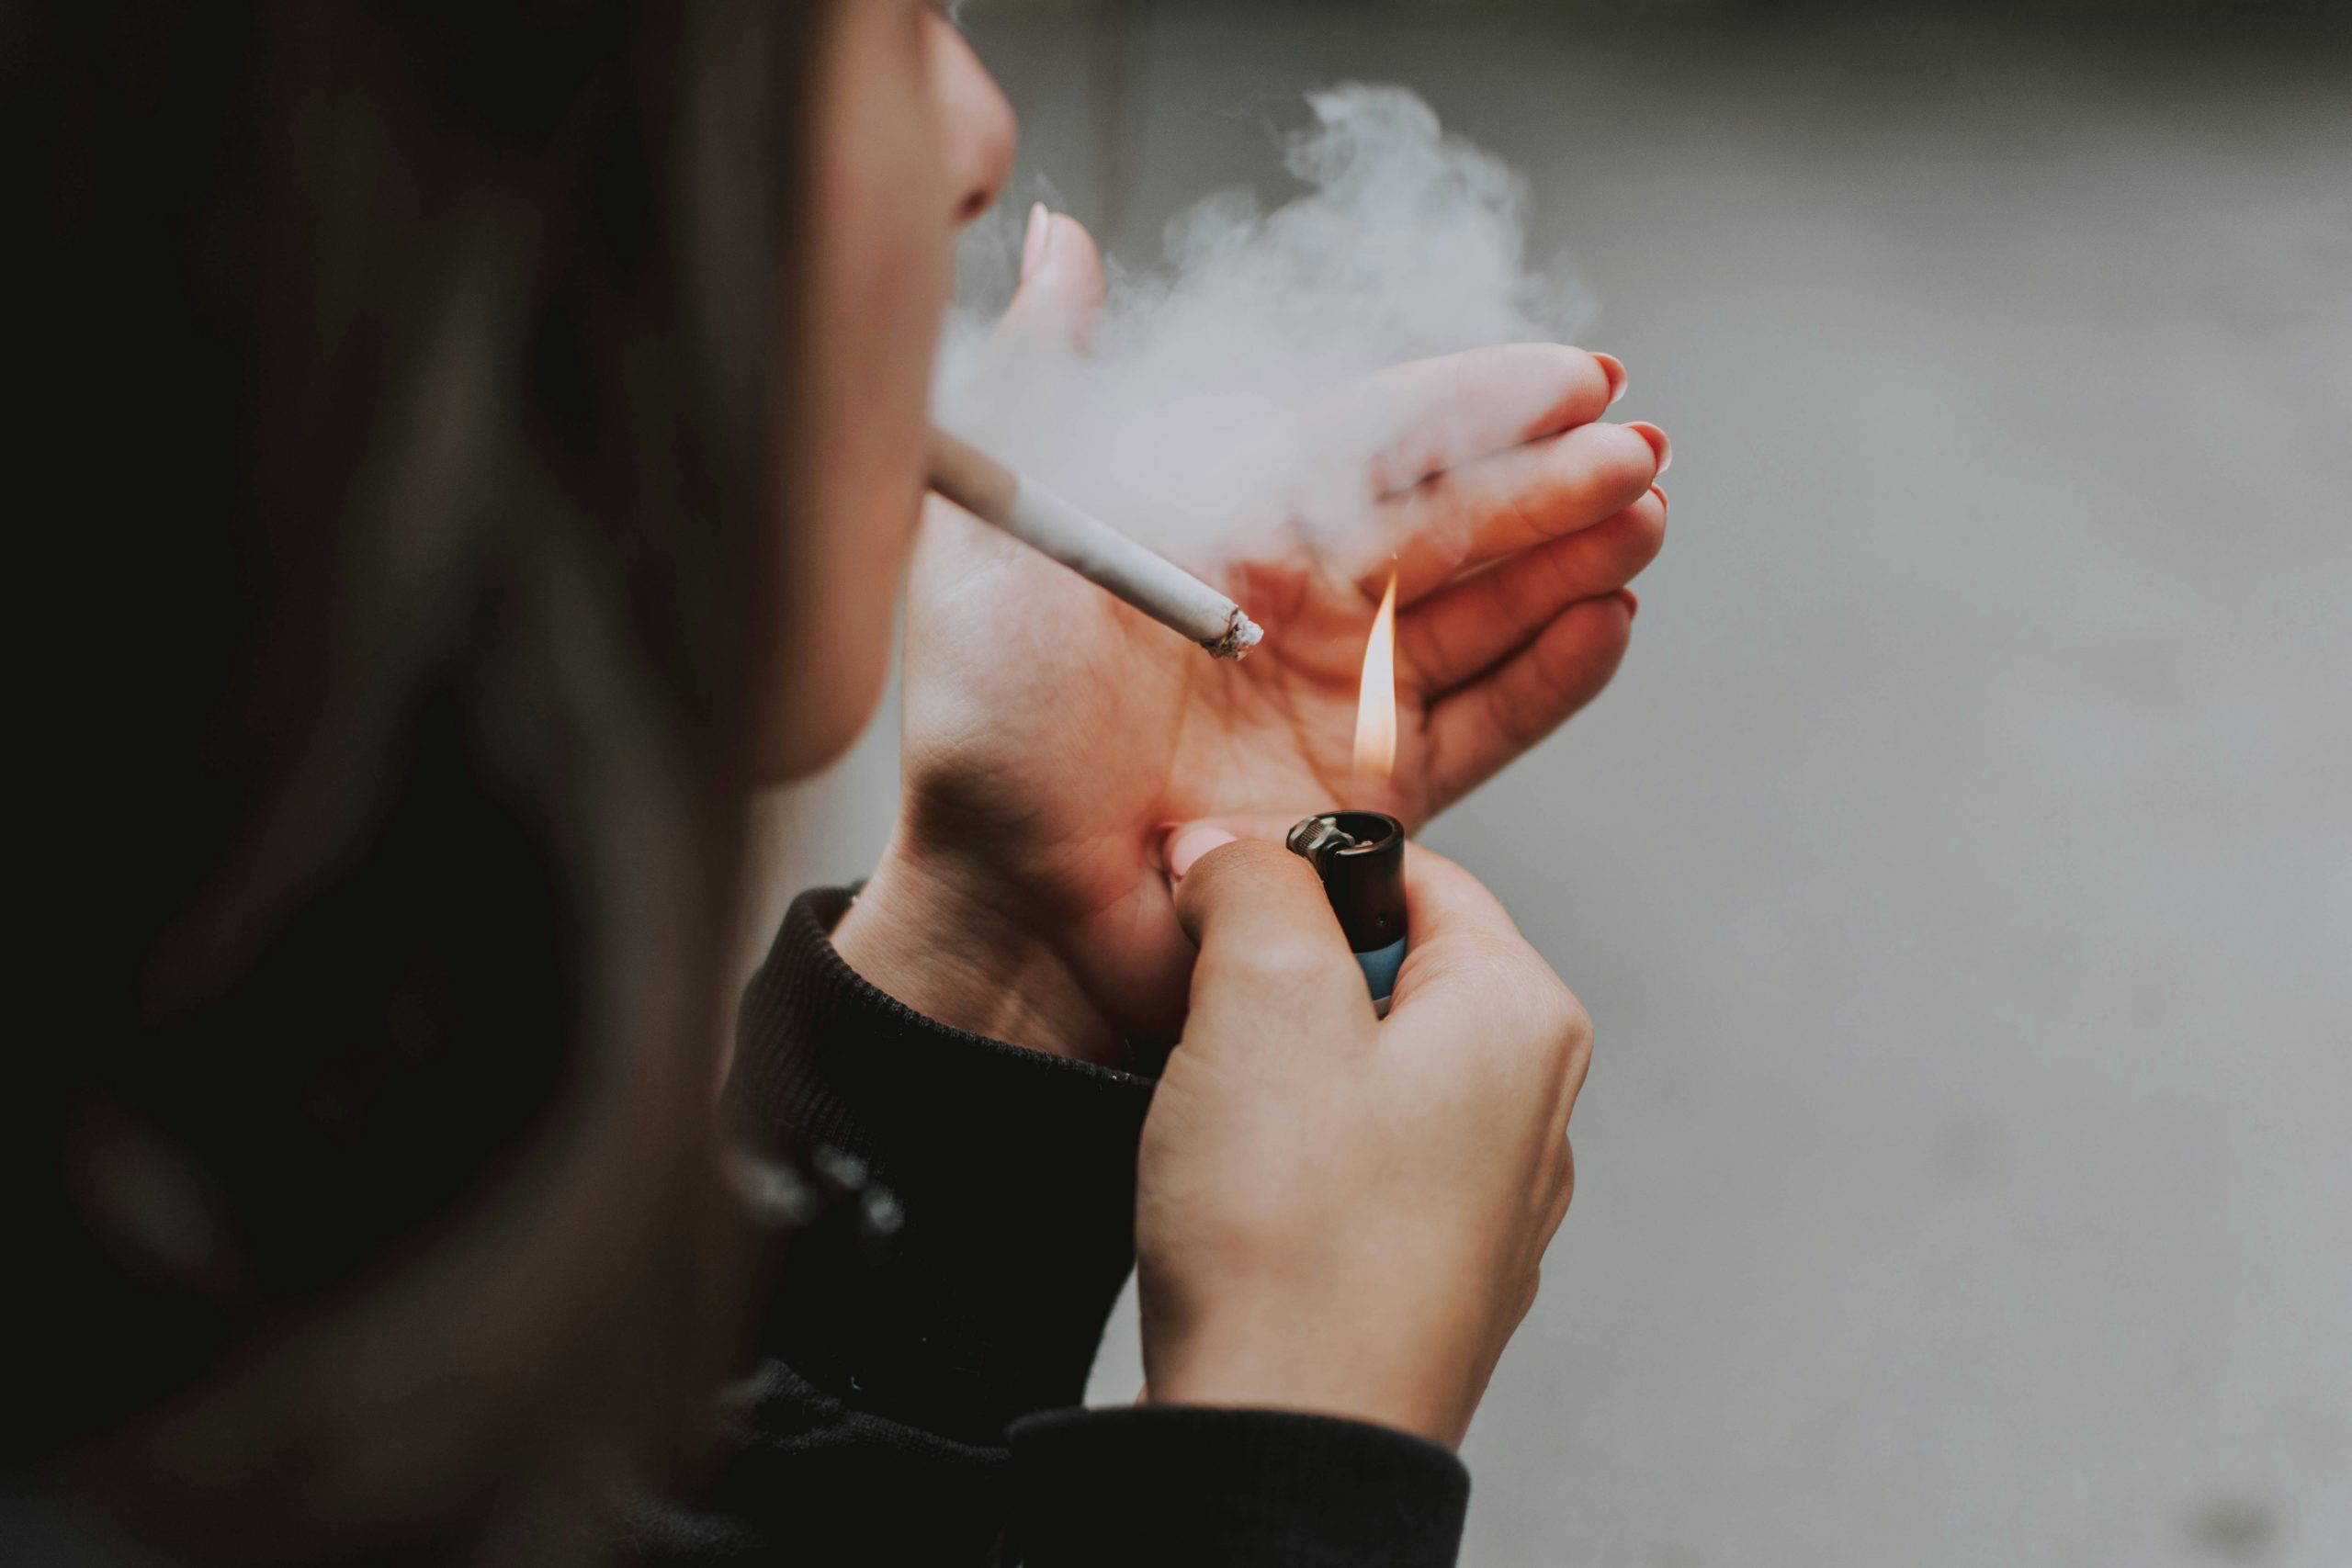 Cerca de 37 milhões de adolescentes entre os 13 e os 15 anos consomem tabaco em todo o mundo